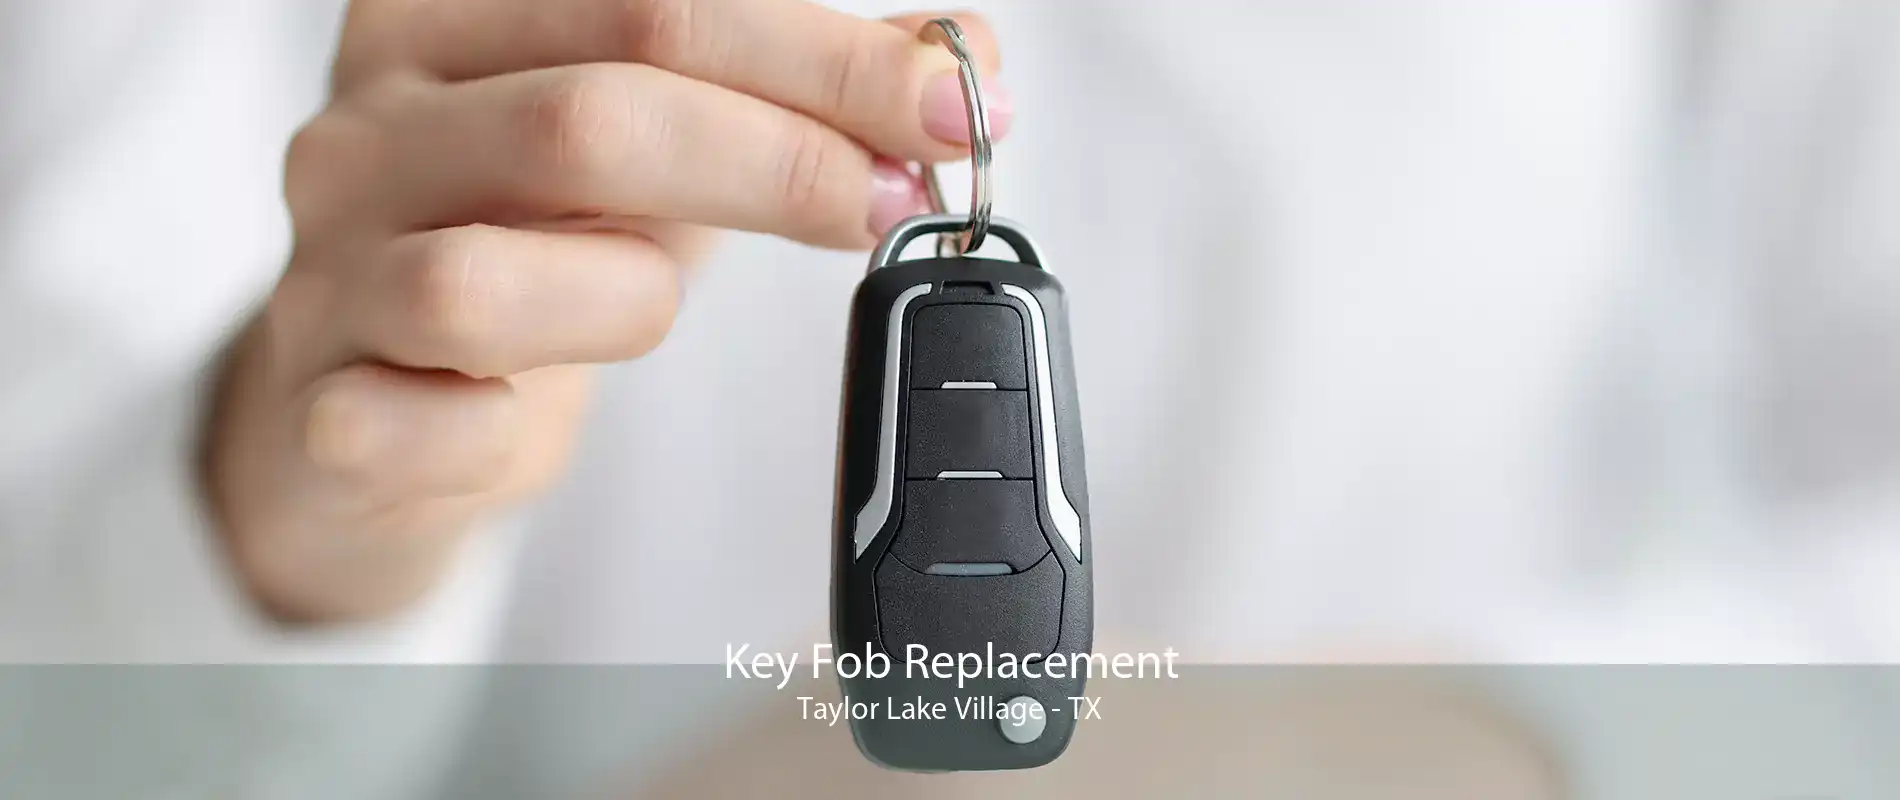 Key Fob Replacement Taylor Lake Village - TX